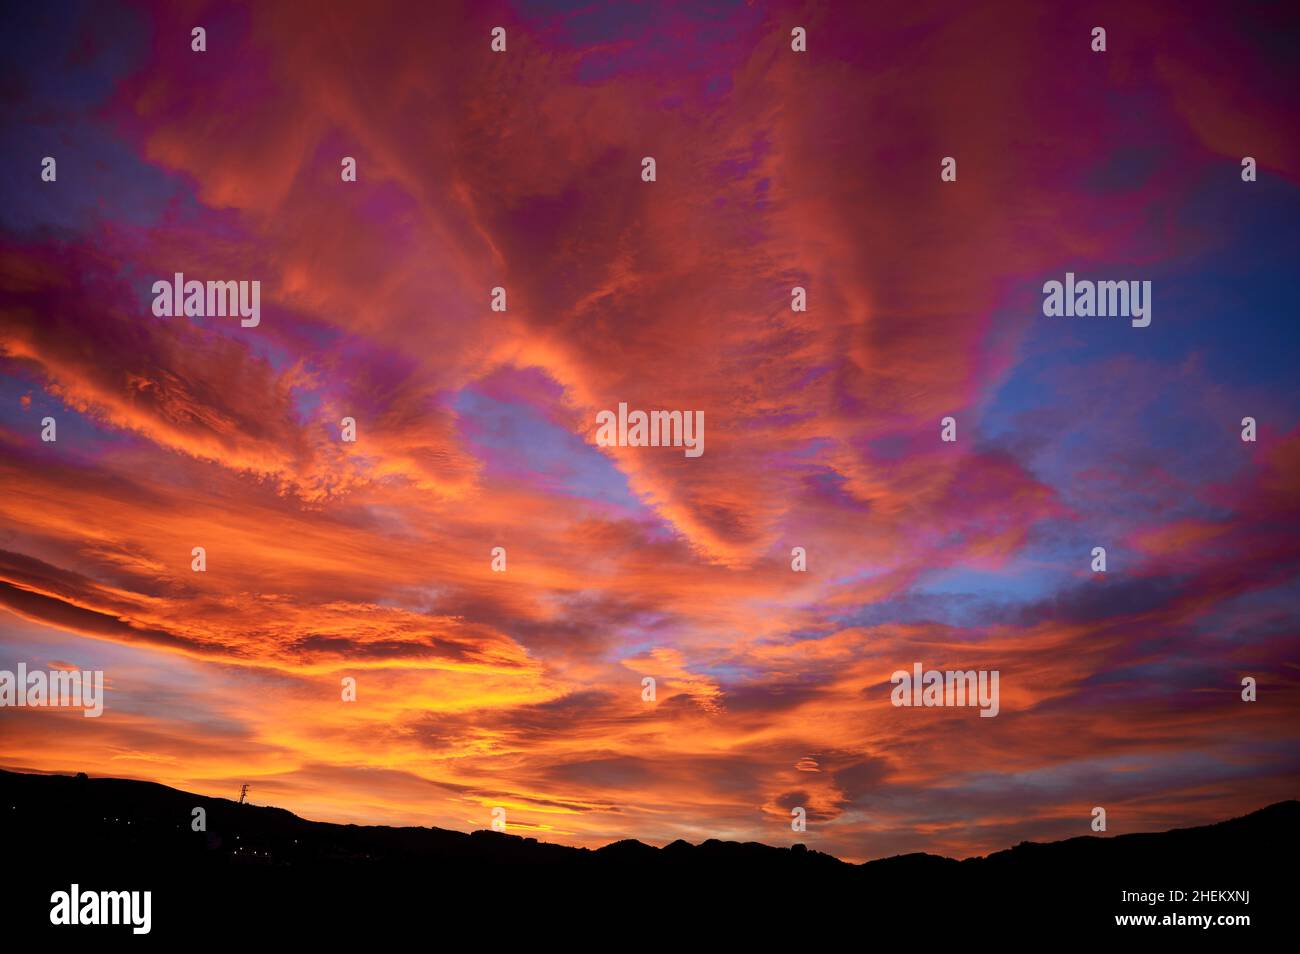 Dramatischer Sonnenuntergang Himmel mit Wolken von schönen Orange und Magenta Farben Stockfoto